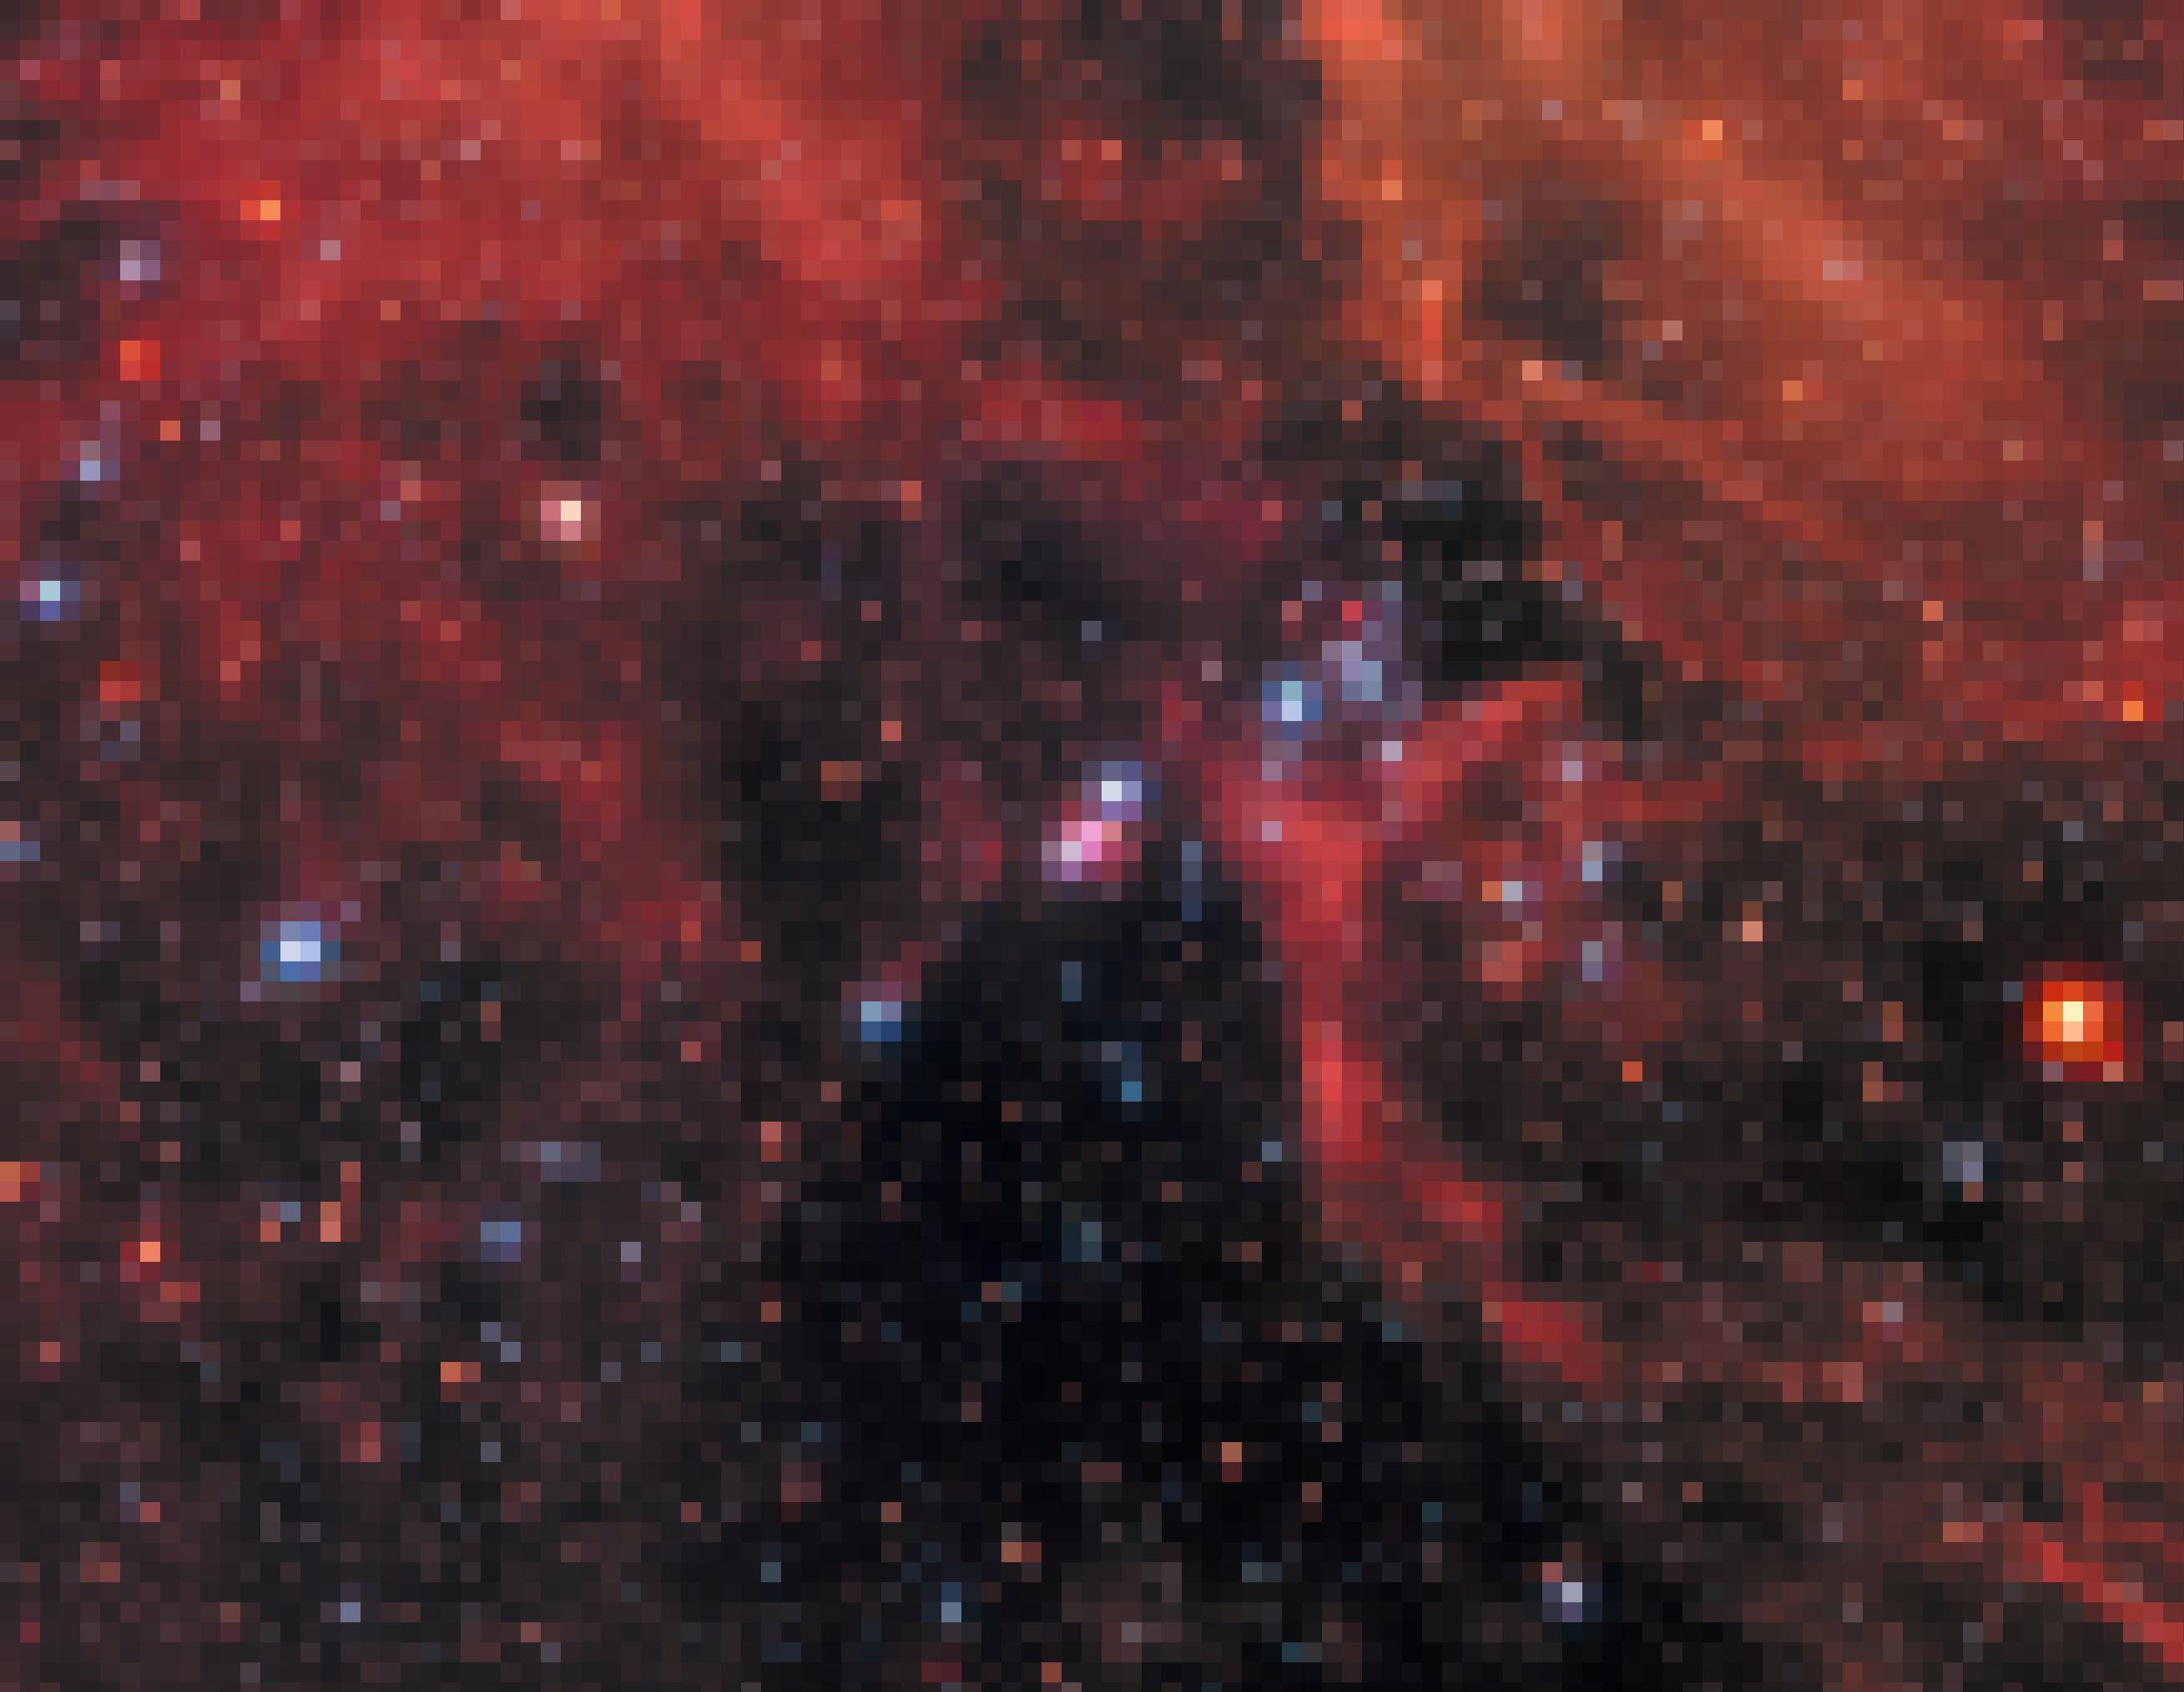 Auf dem Foto zu sehen sind rote Wolken und Sterne der Großen Magellanschen Wolke. Das eigentliche Objekt, das Astronomen interessiert, befindet sich genau im Zentrum des Bildes: Zwei kleine Kreise, die Überreste einer im Jahre 1987 beobachteten Supernova-Explosion – aufgenommen im Jahr 2017, also 30 Jahre später. Supernova-Explosionen zeigen, wie dramatisch sich die Materie in unsere Milchstraße immer wieder wandelt und Neues hervorbringt.